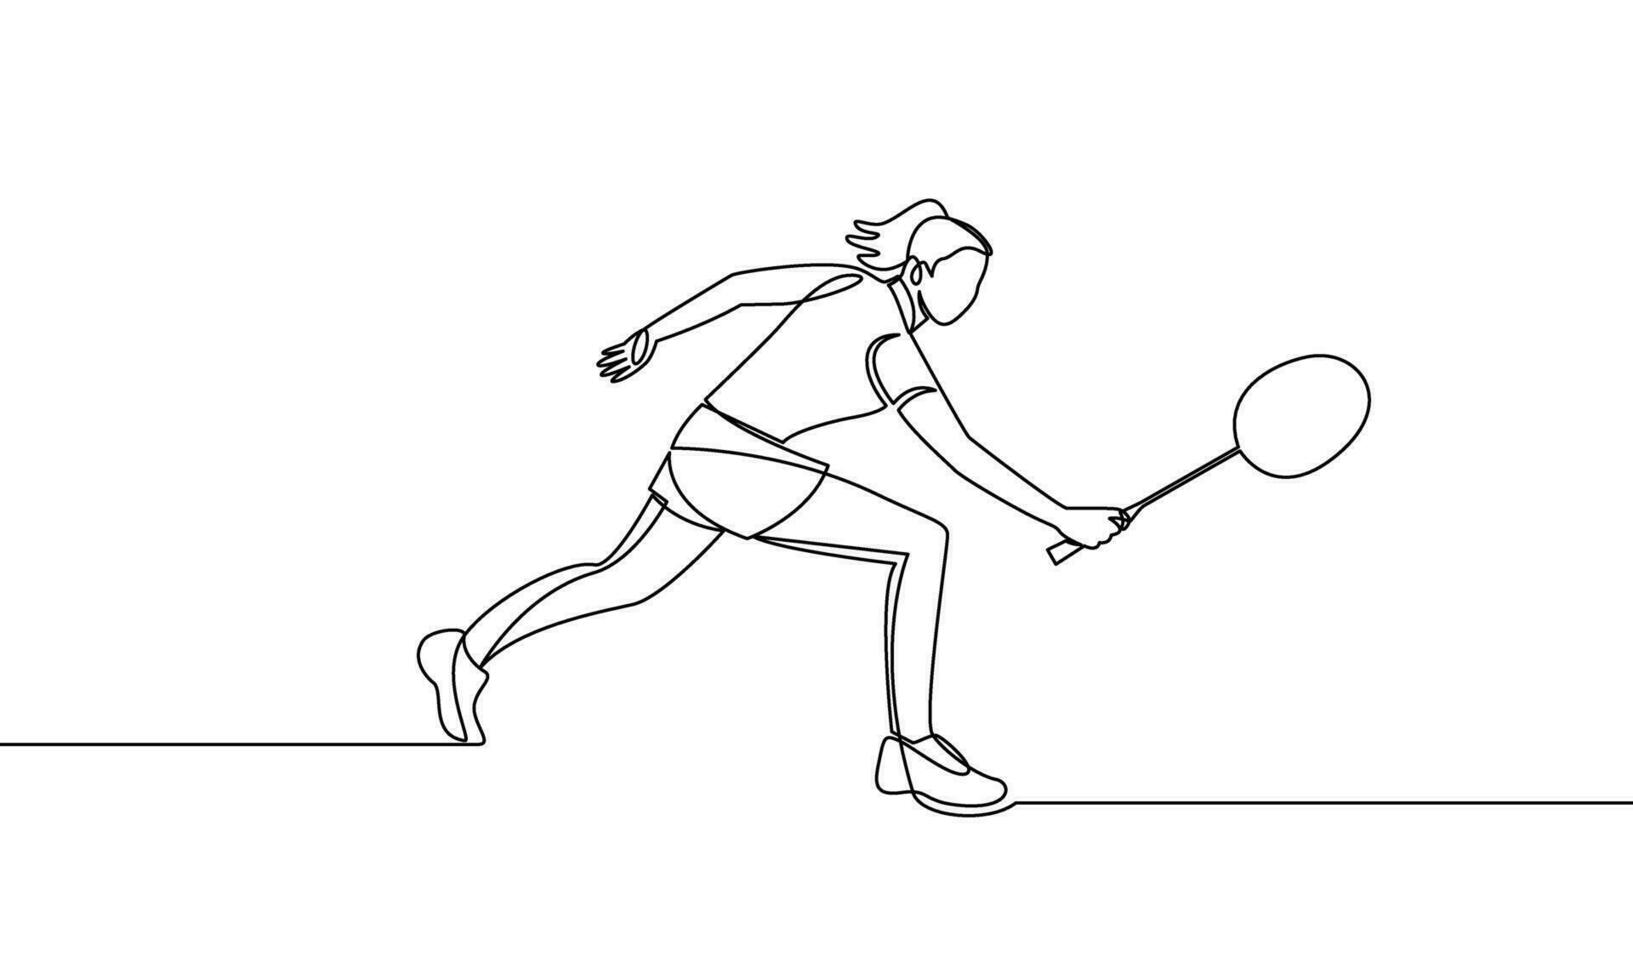 Single kontinuierlich Linie Zeichnung von ein jung Frau spielen Badminton. Sport, Spiel. das Konzept von Attacke und Verteidigung. einer Linie Vektor Illustration